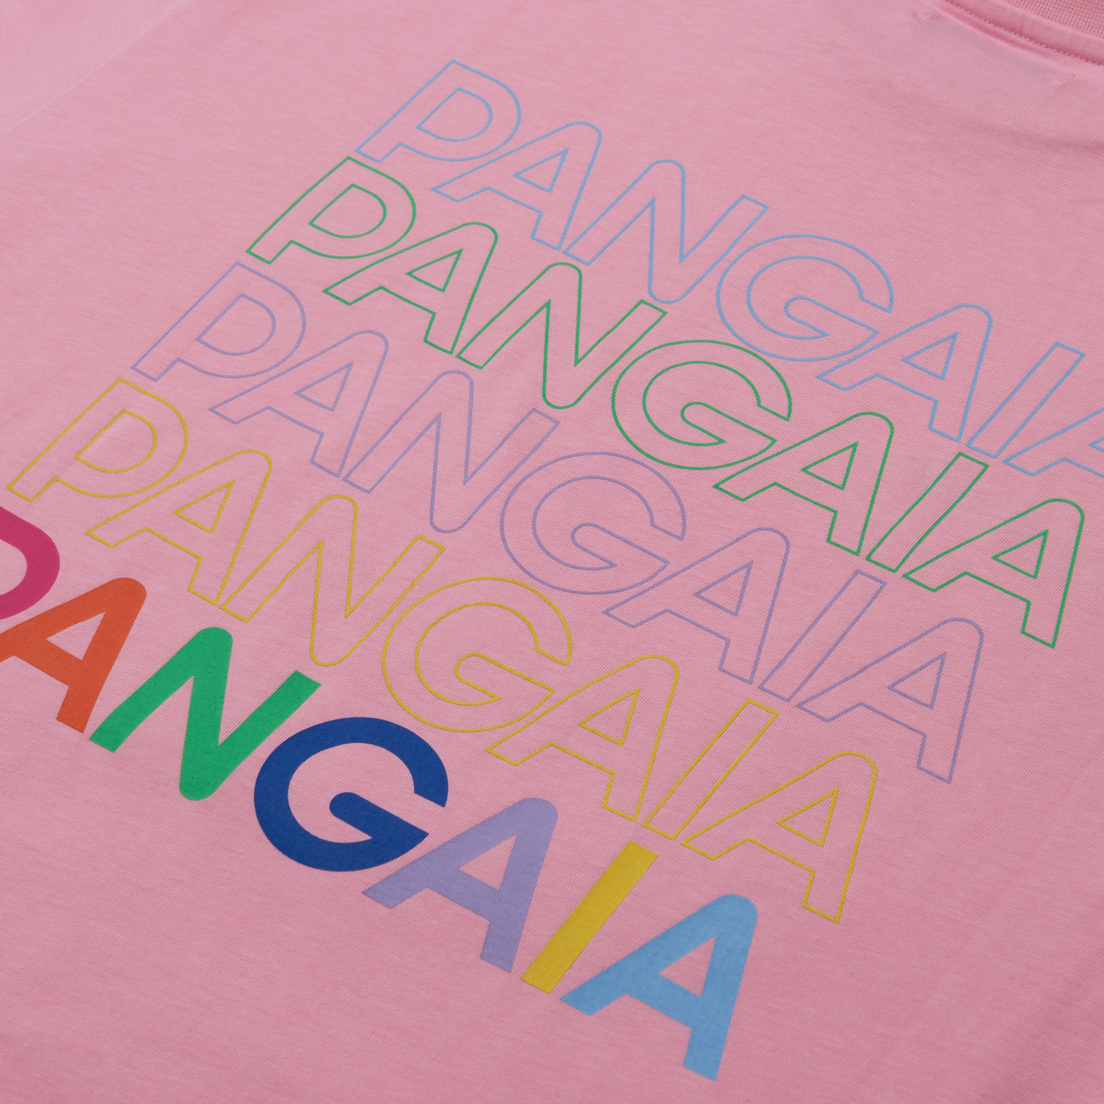 PANGAIA Мужская футболка Graphic 5 Pangaia